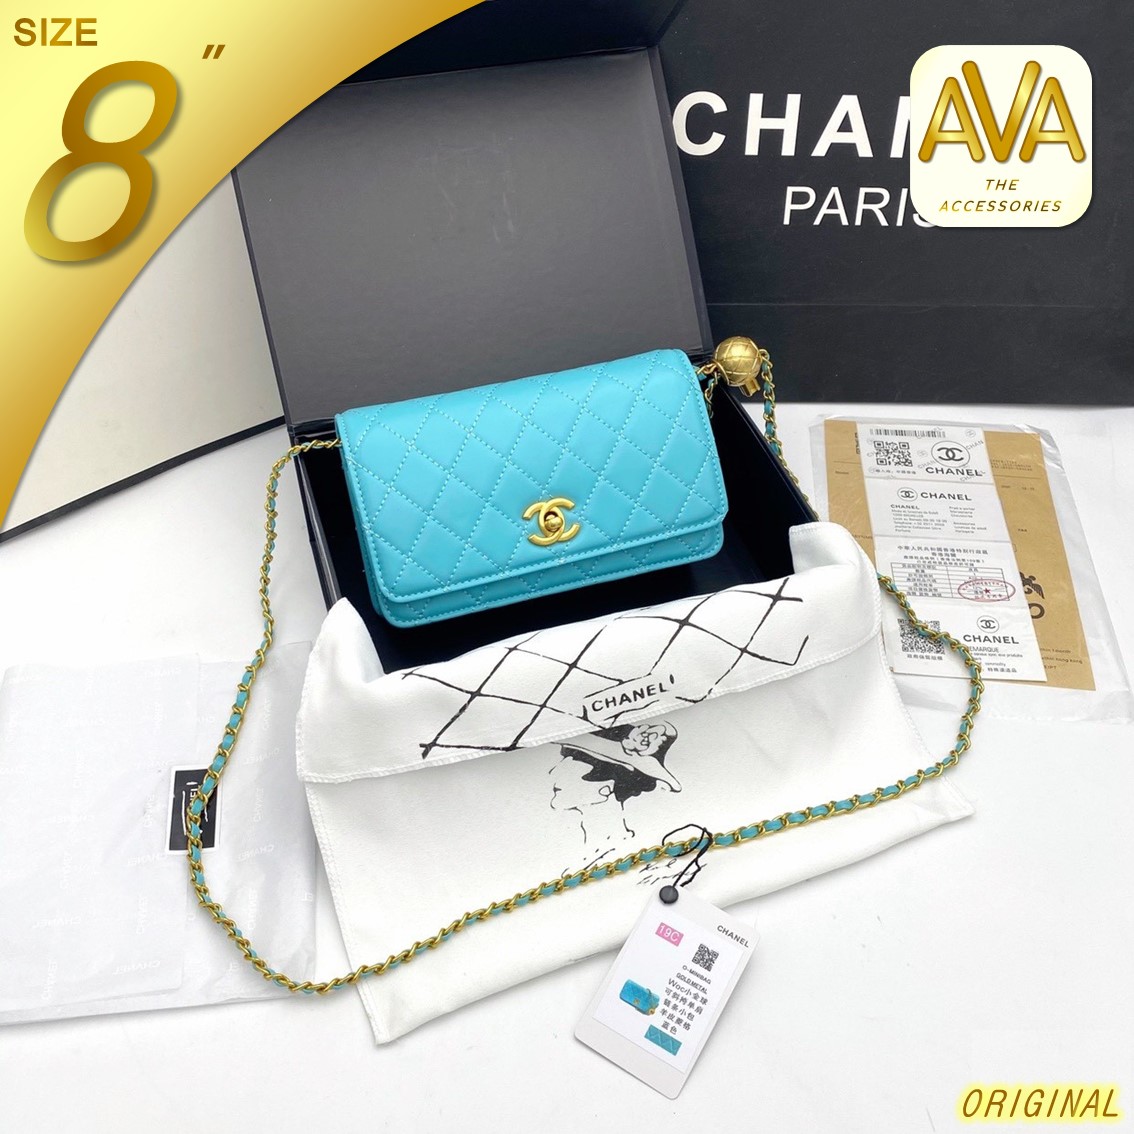 AVA Thailand - C H A N E L_Pearl Clutch Wallet on Chain กระเป๋าถือ กระเป๋าสตางค์พร้อมสายละพาย ขนาด 8 นิ้ว⭐⭐⭐⭐⭐แมทช์ง่ายได้กับทุกลุค สวยครบจบเลย🎁🎁พร้อมกล่อง